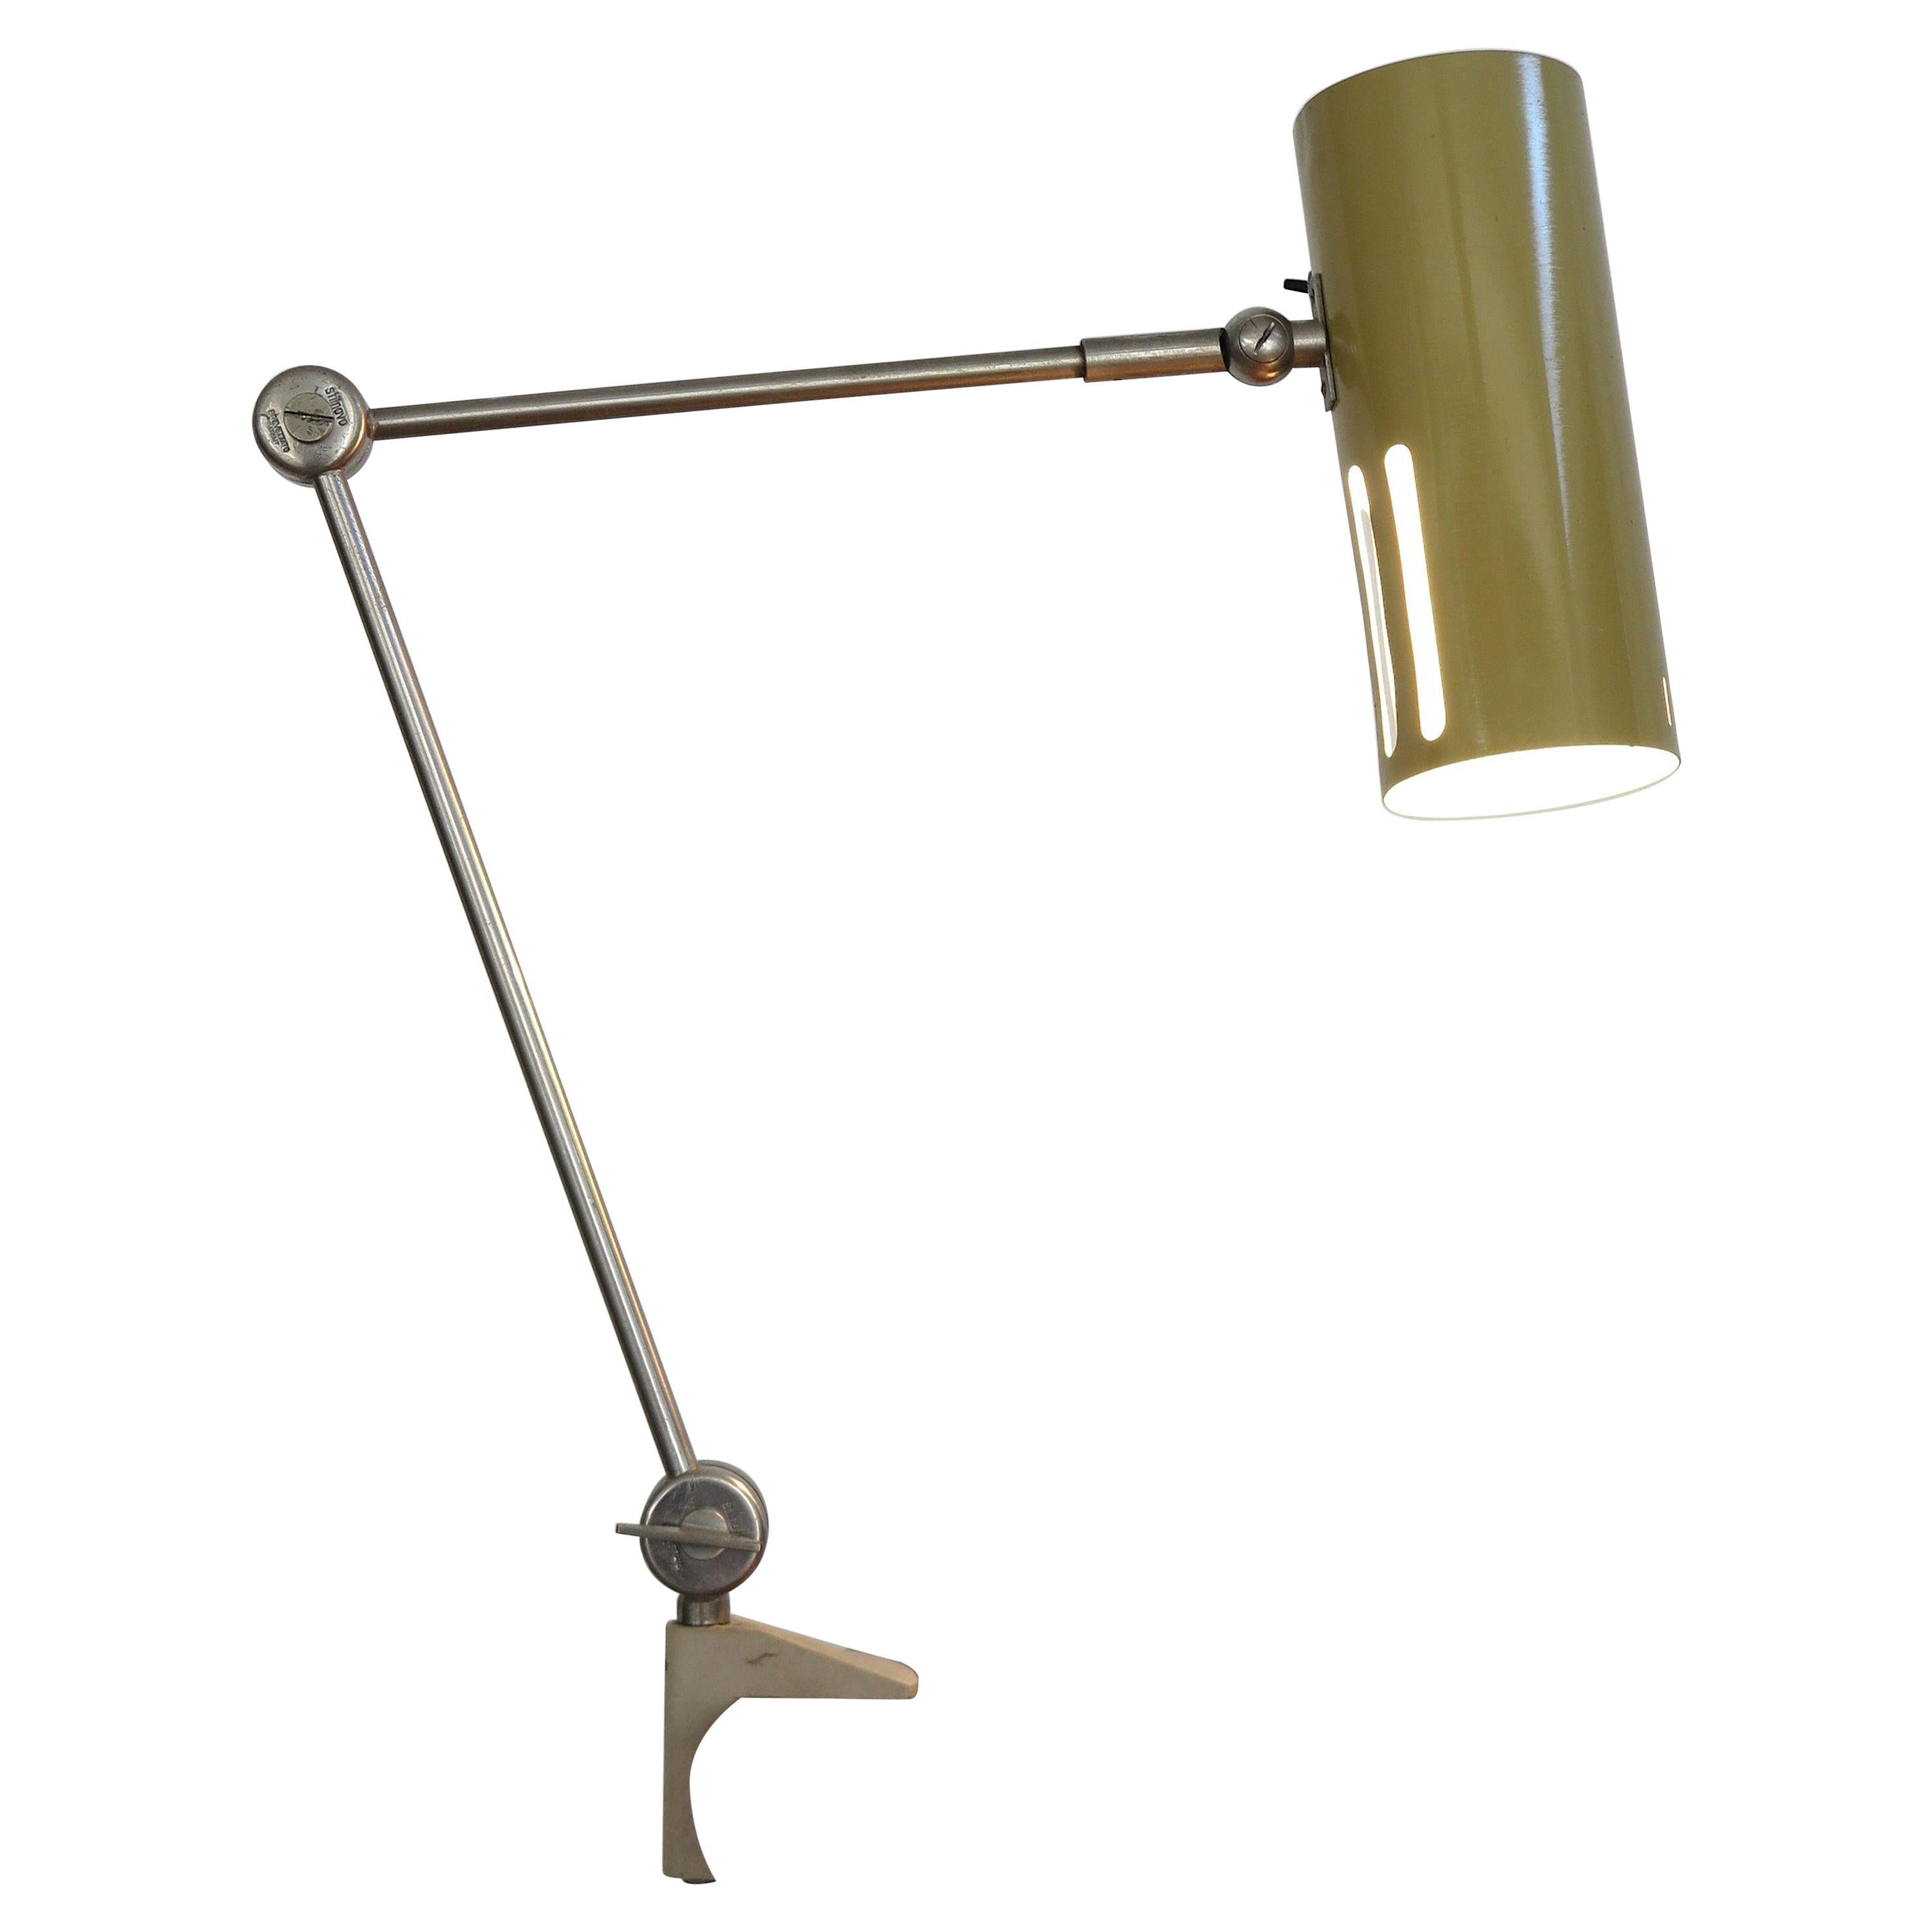 Italian Stilnovo Midcentury Modern Metal Clamp Table Lamp 1950s For Sale